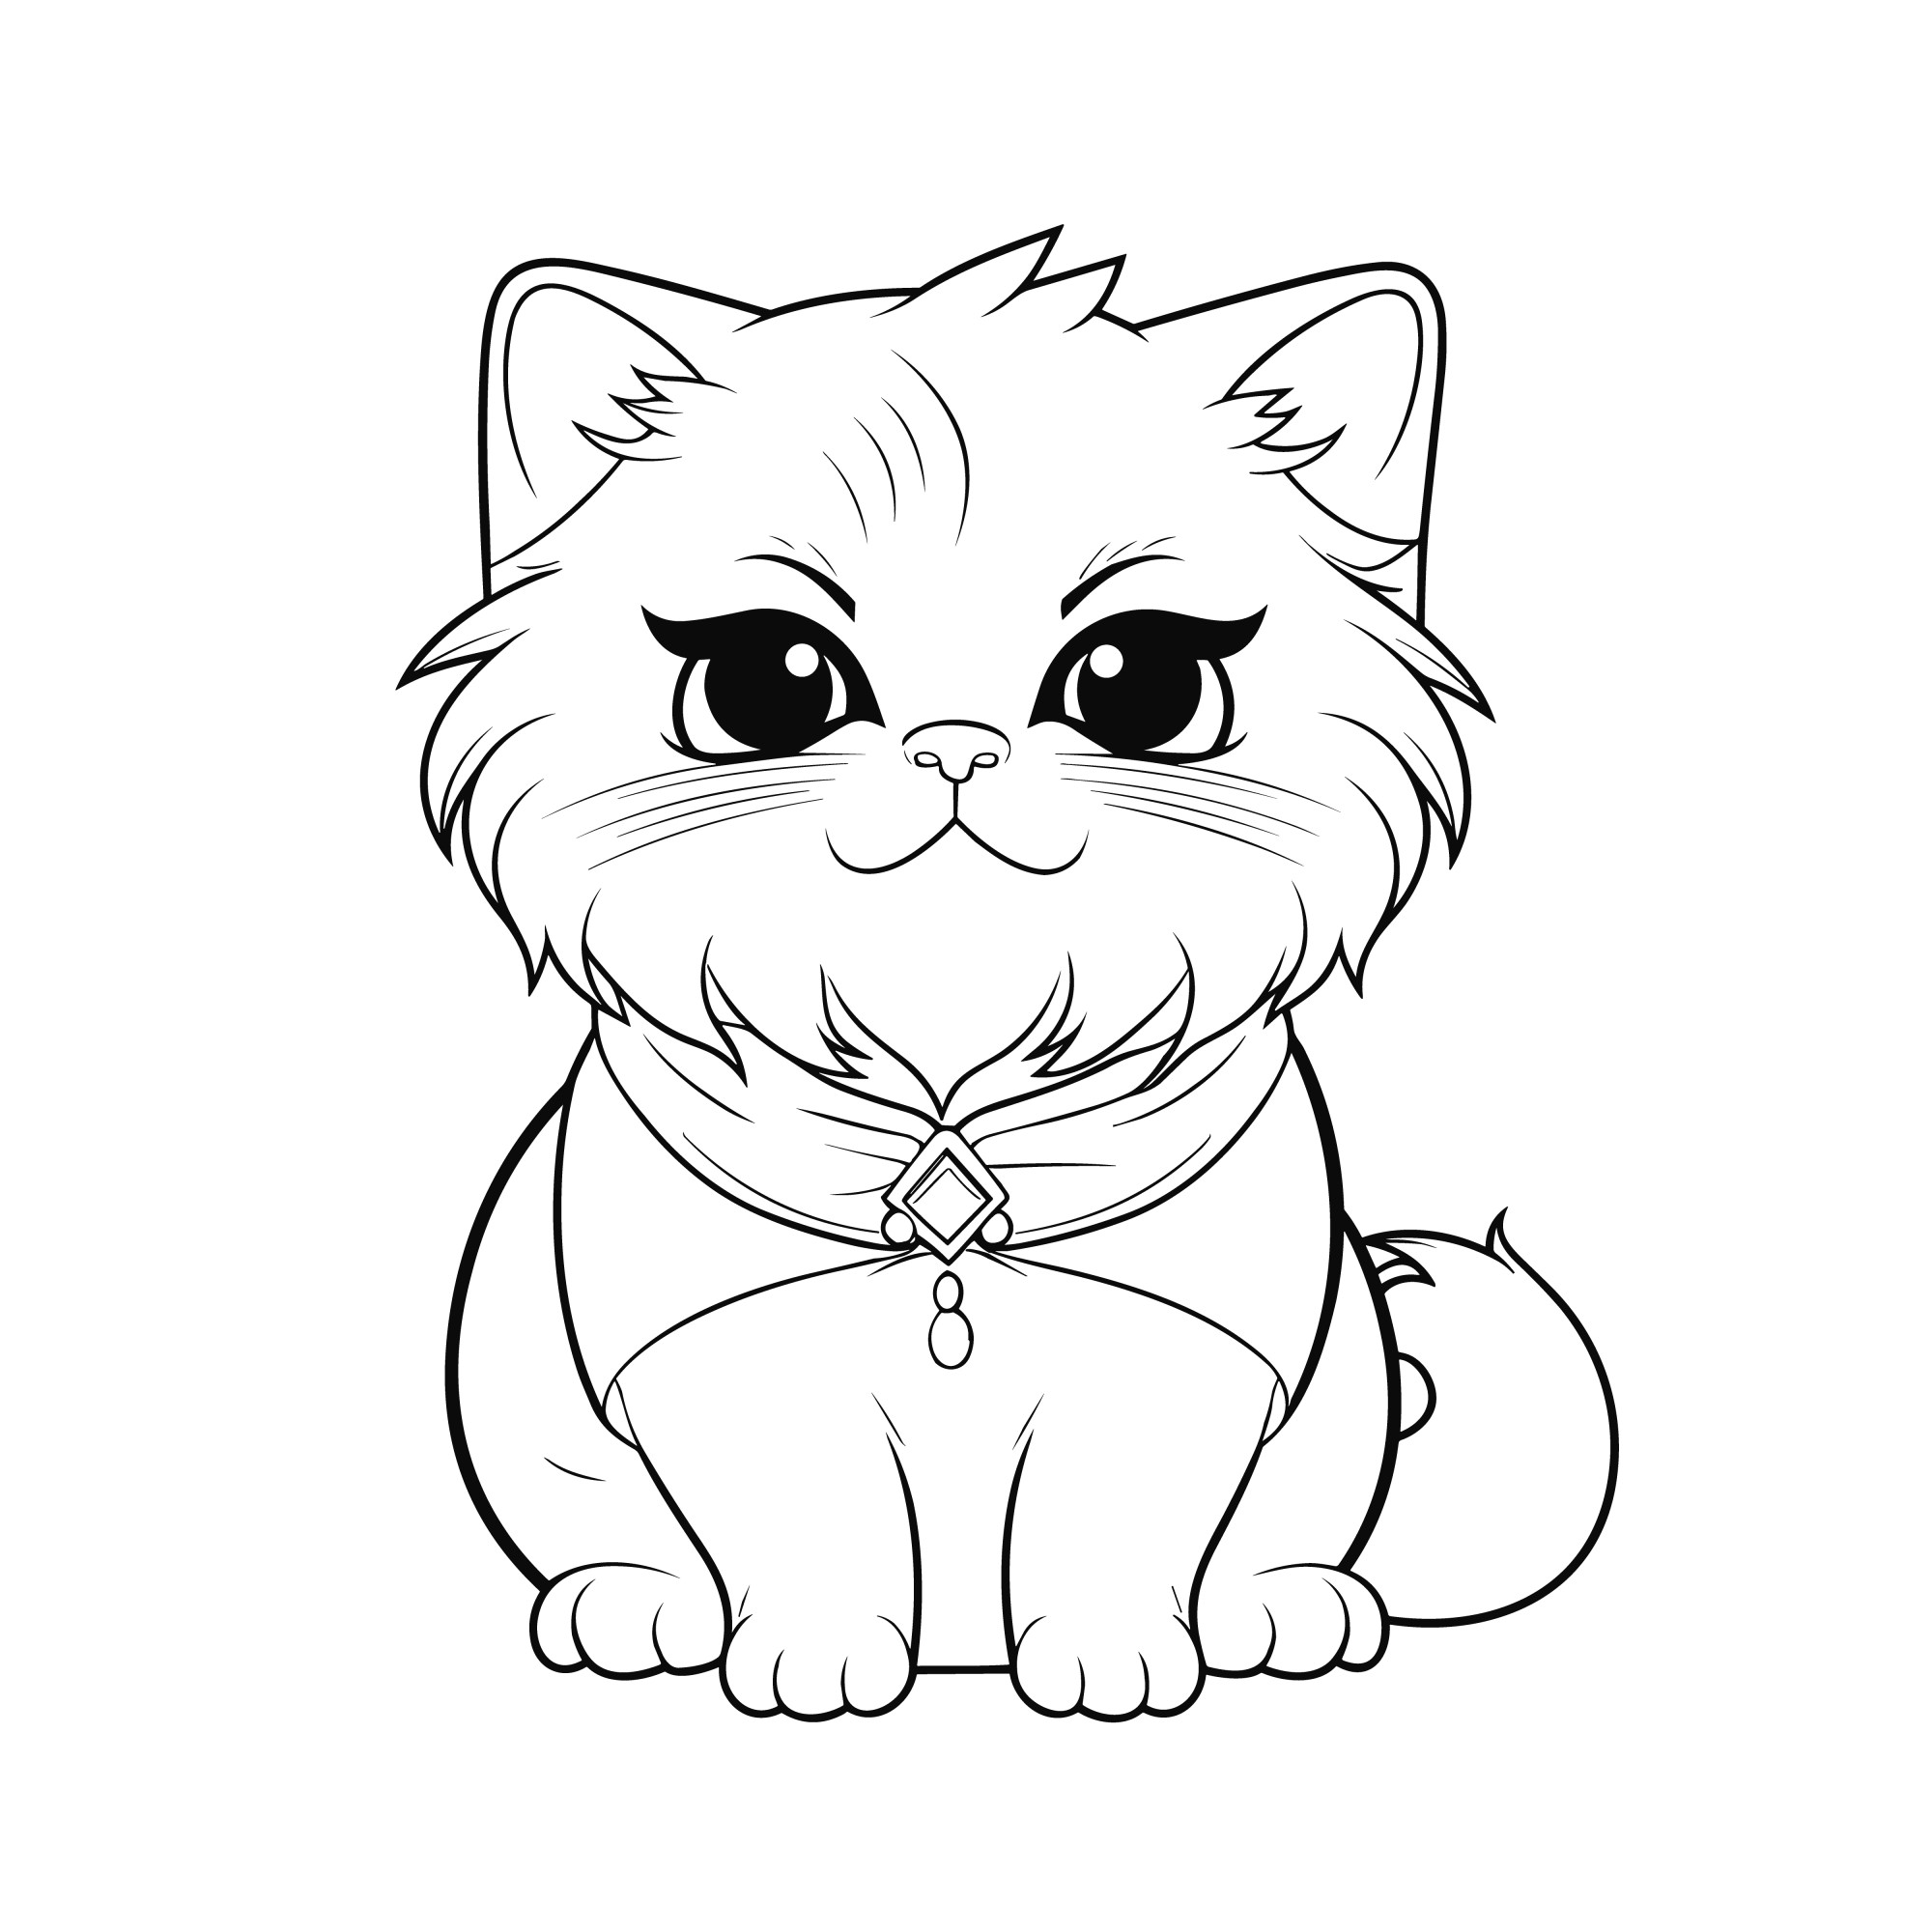 Раскраска для детей: сказочный персидский кот